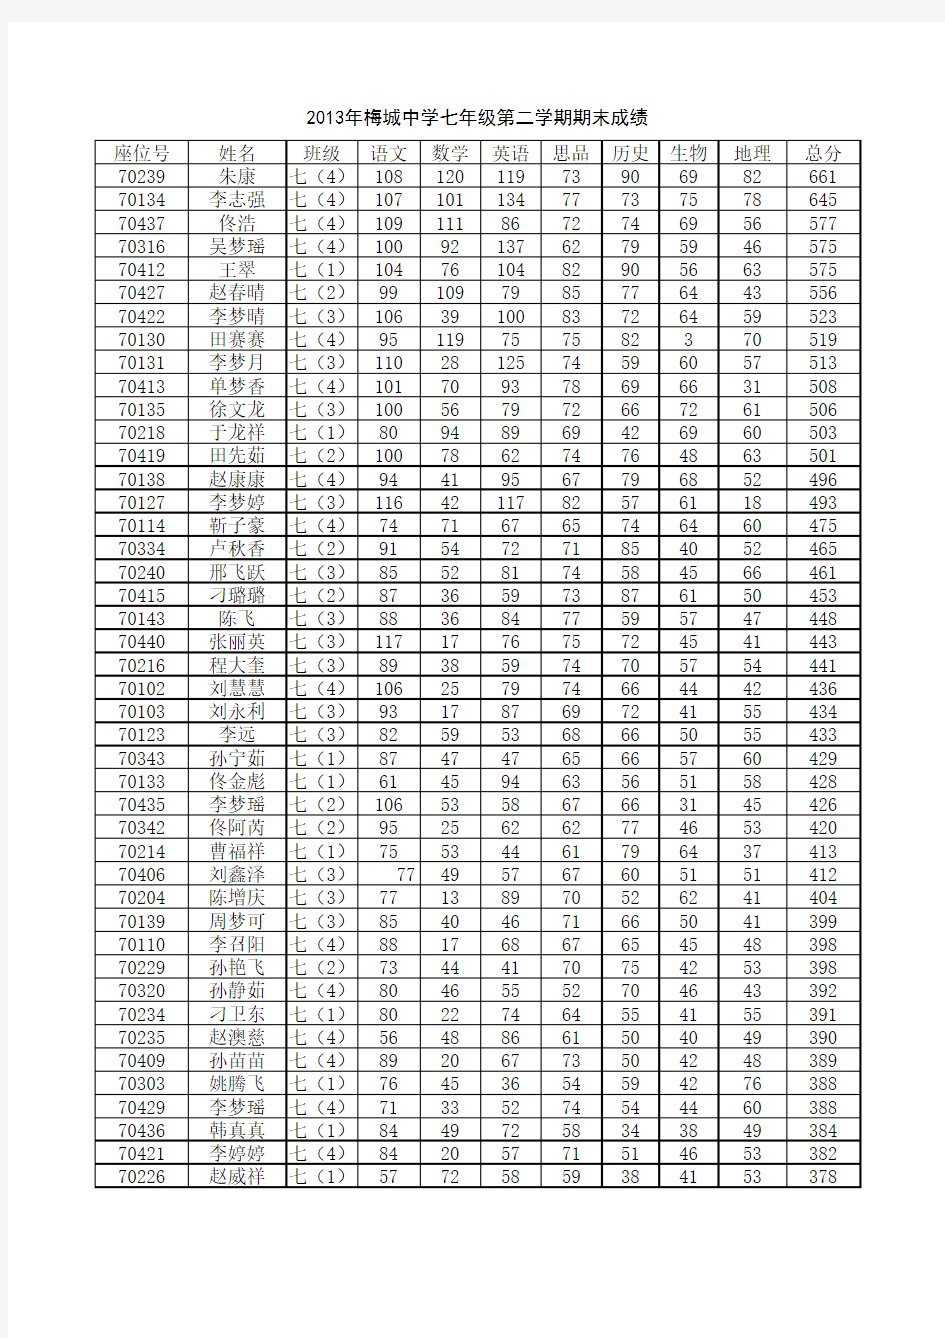 2013年梅城中学七年级期末考试成绩表